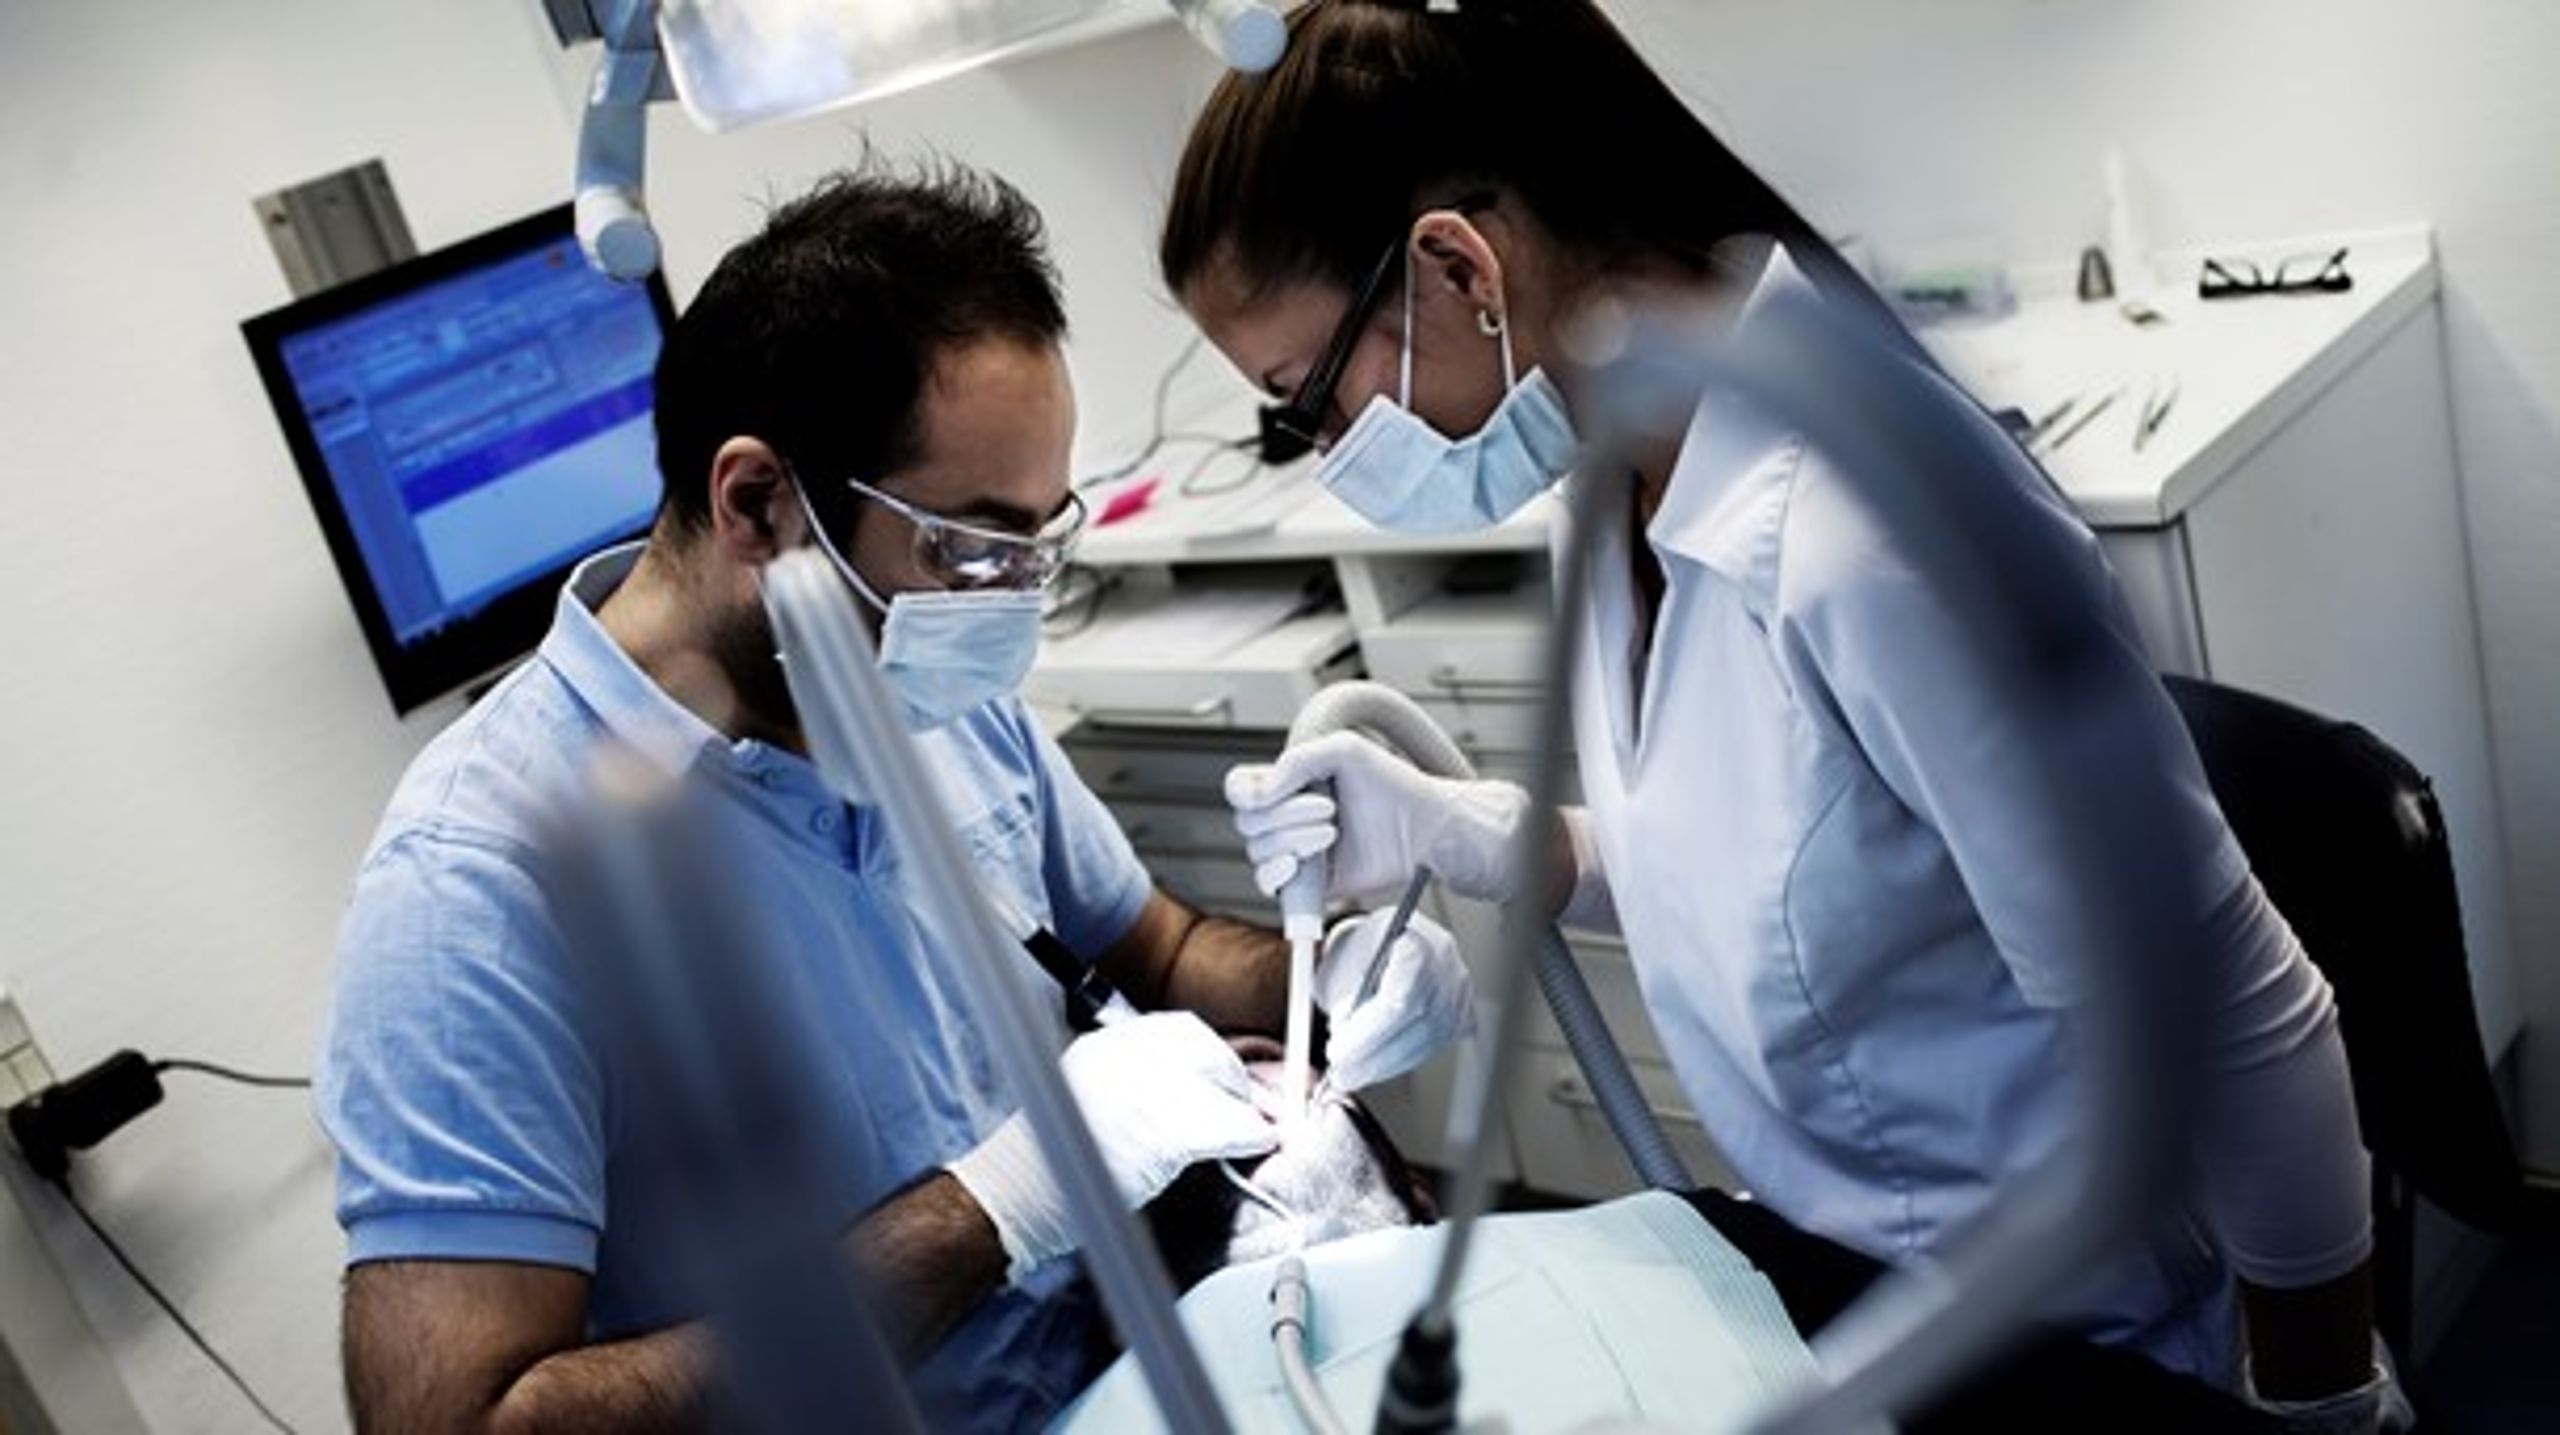 Uligheden i tandsundhed er forøget de sidste halvtreds år, mener tre tandlæger.